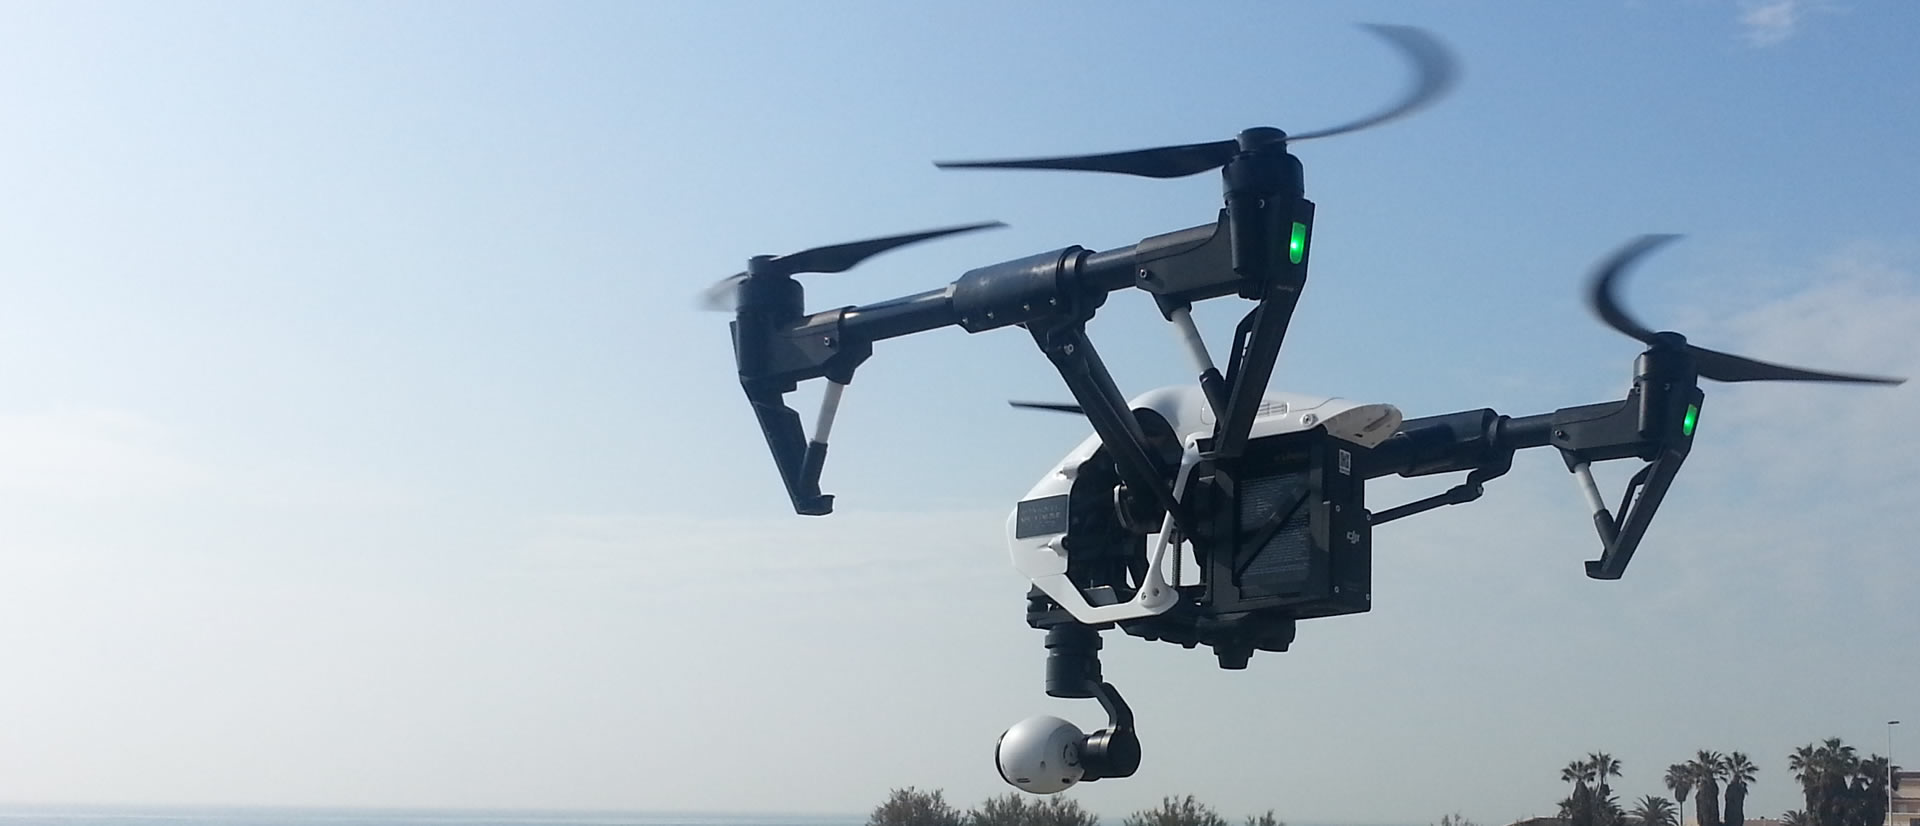 Los drones de menos de 10 kilos podrán sobrevolar la ciudad a menos de 120 metros